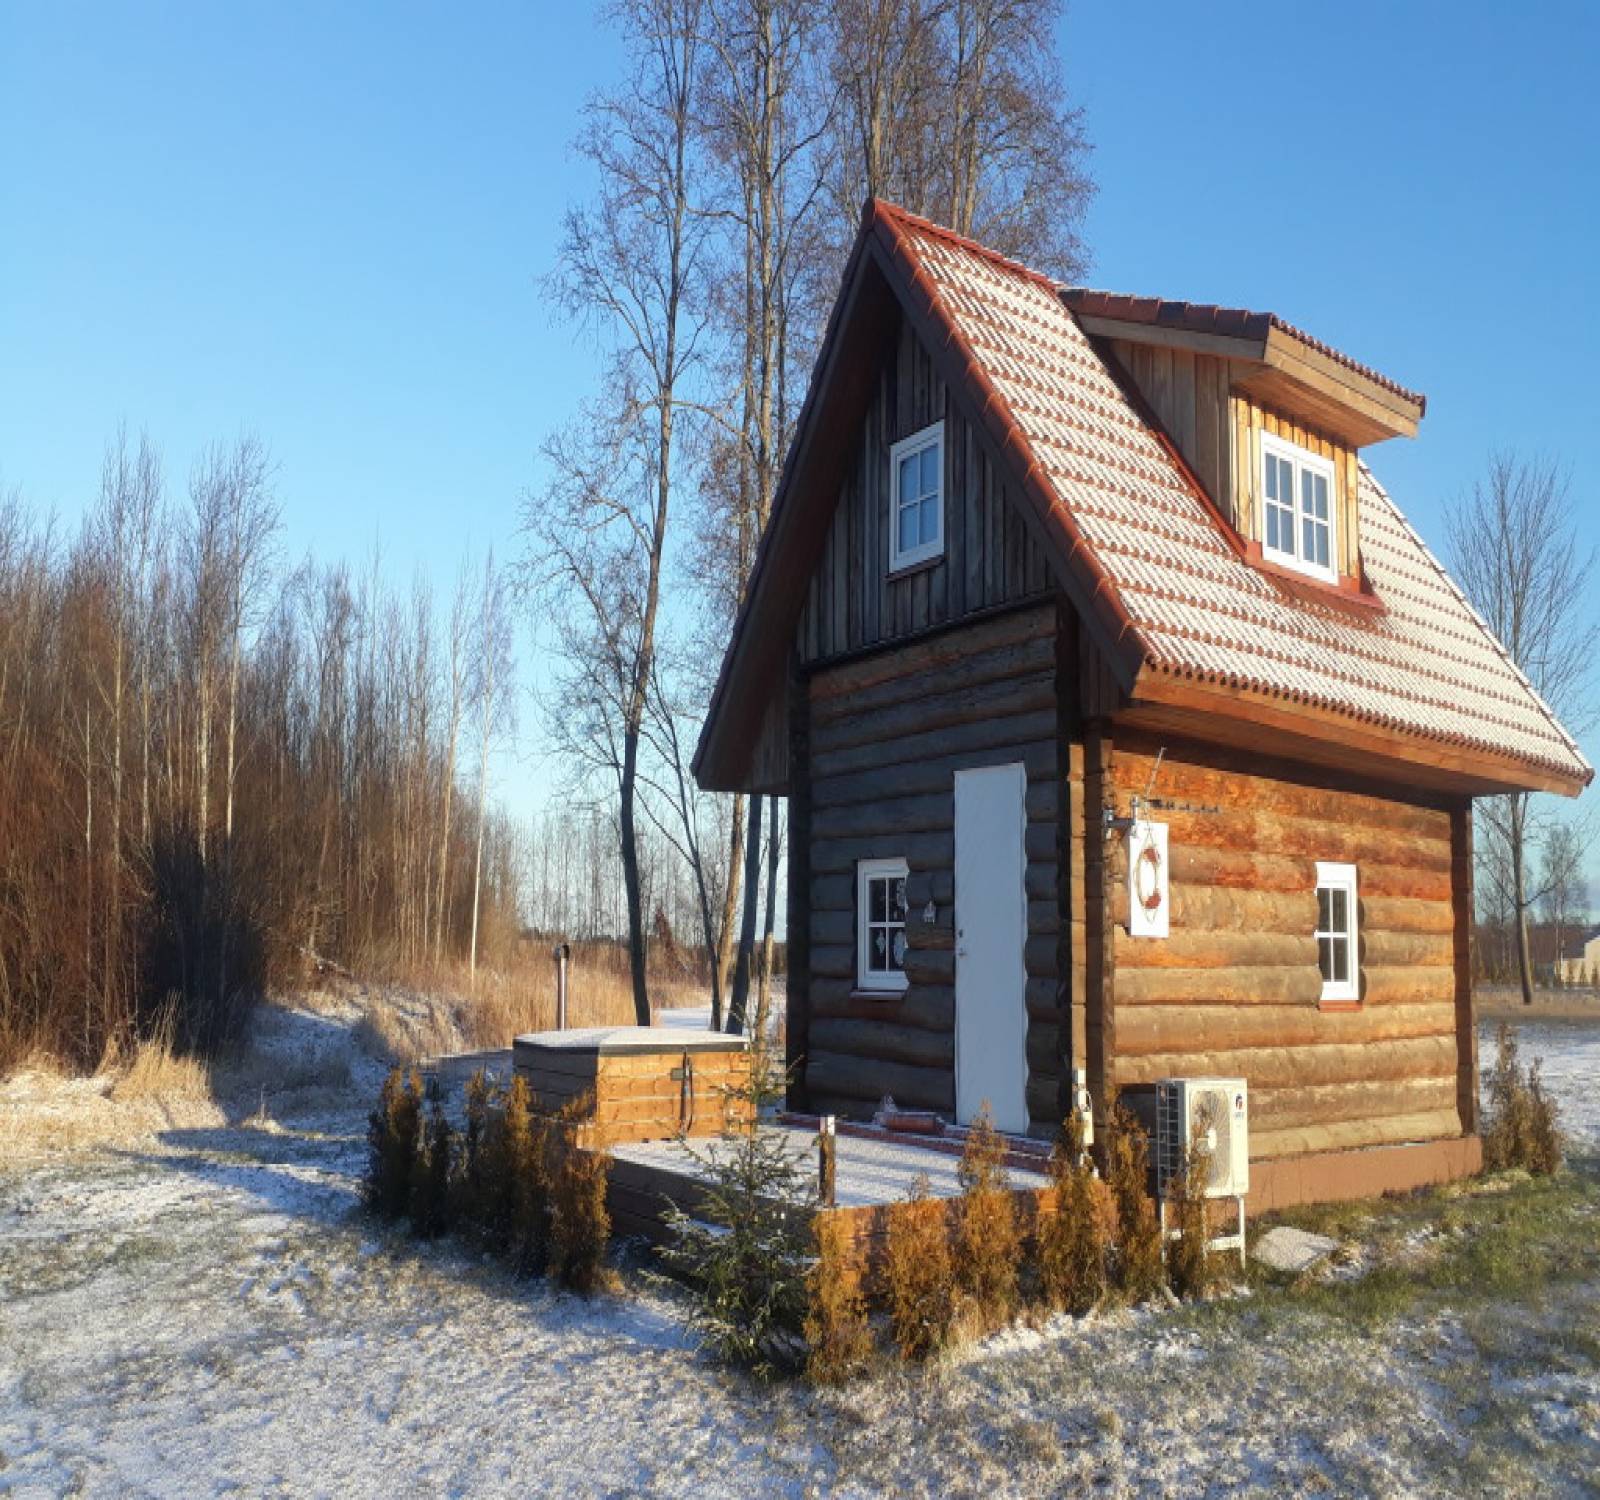 Uus-Sauga 62,Pärnu,Pärnu maakond,Holiday home,Uus-Sauga,1008